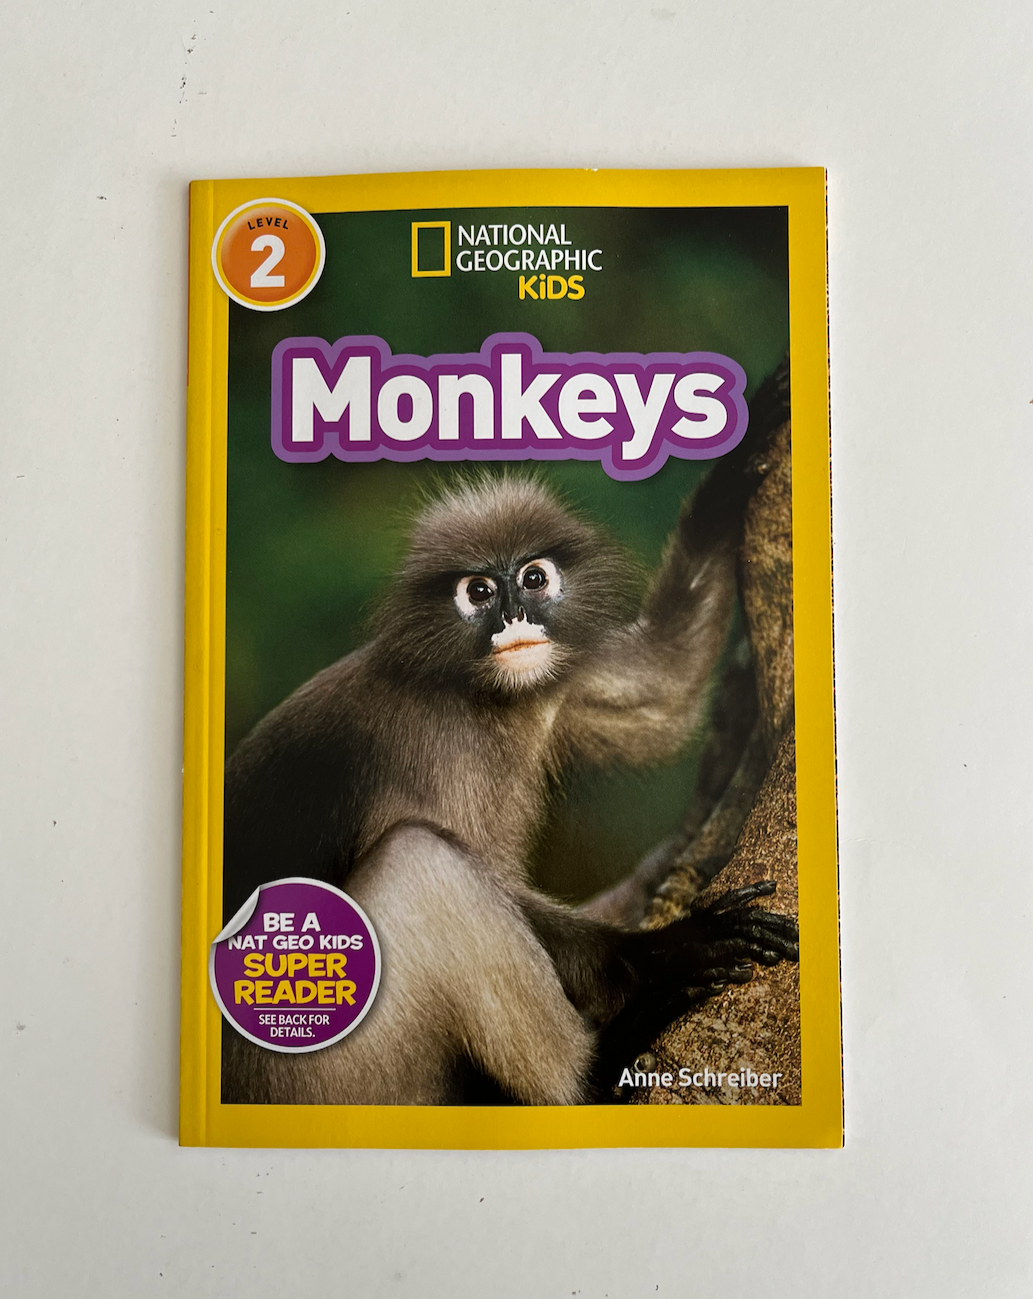 National Geographic: Monkeys by Anne Schreiber